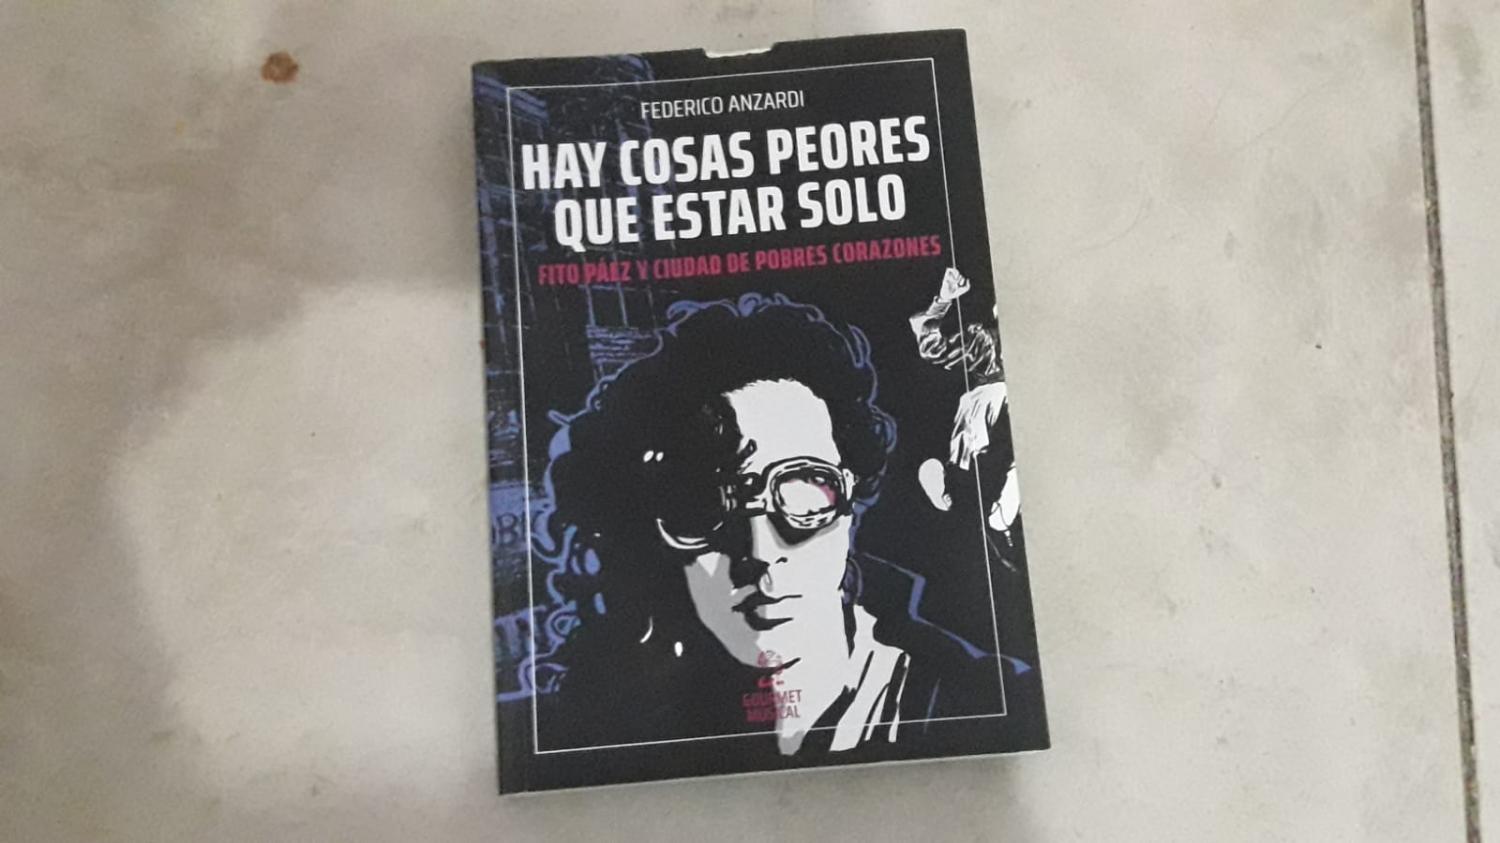 Apuntes sobre Hay cosas peores que estar solo, el libro sobre el año más oscuro en la vida de Fito Páez